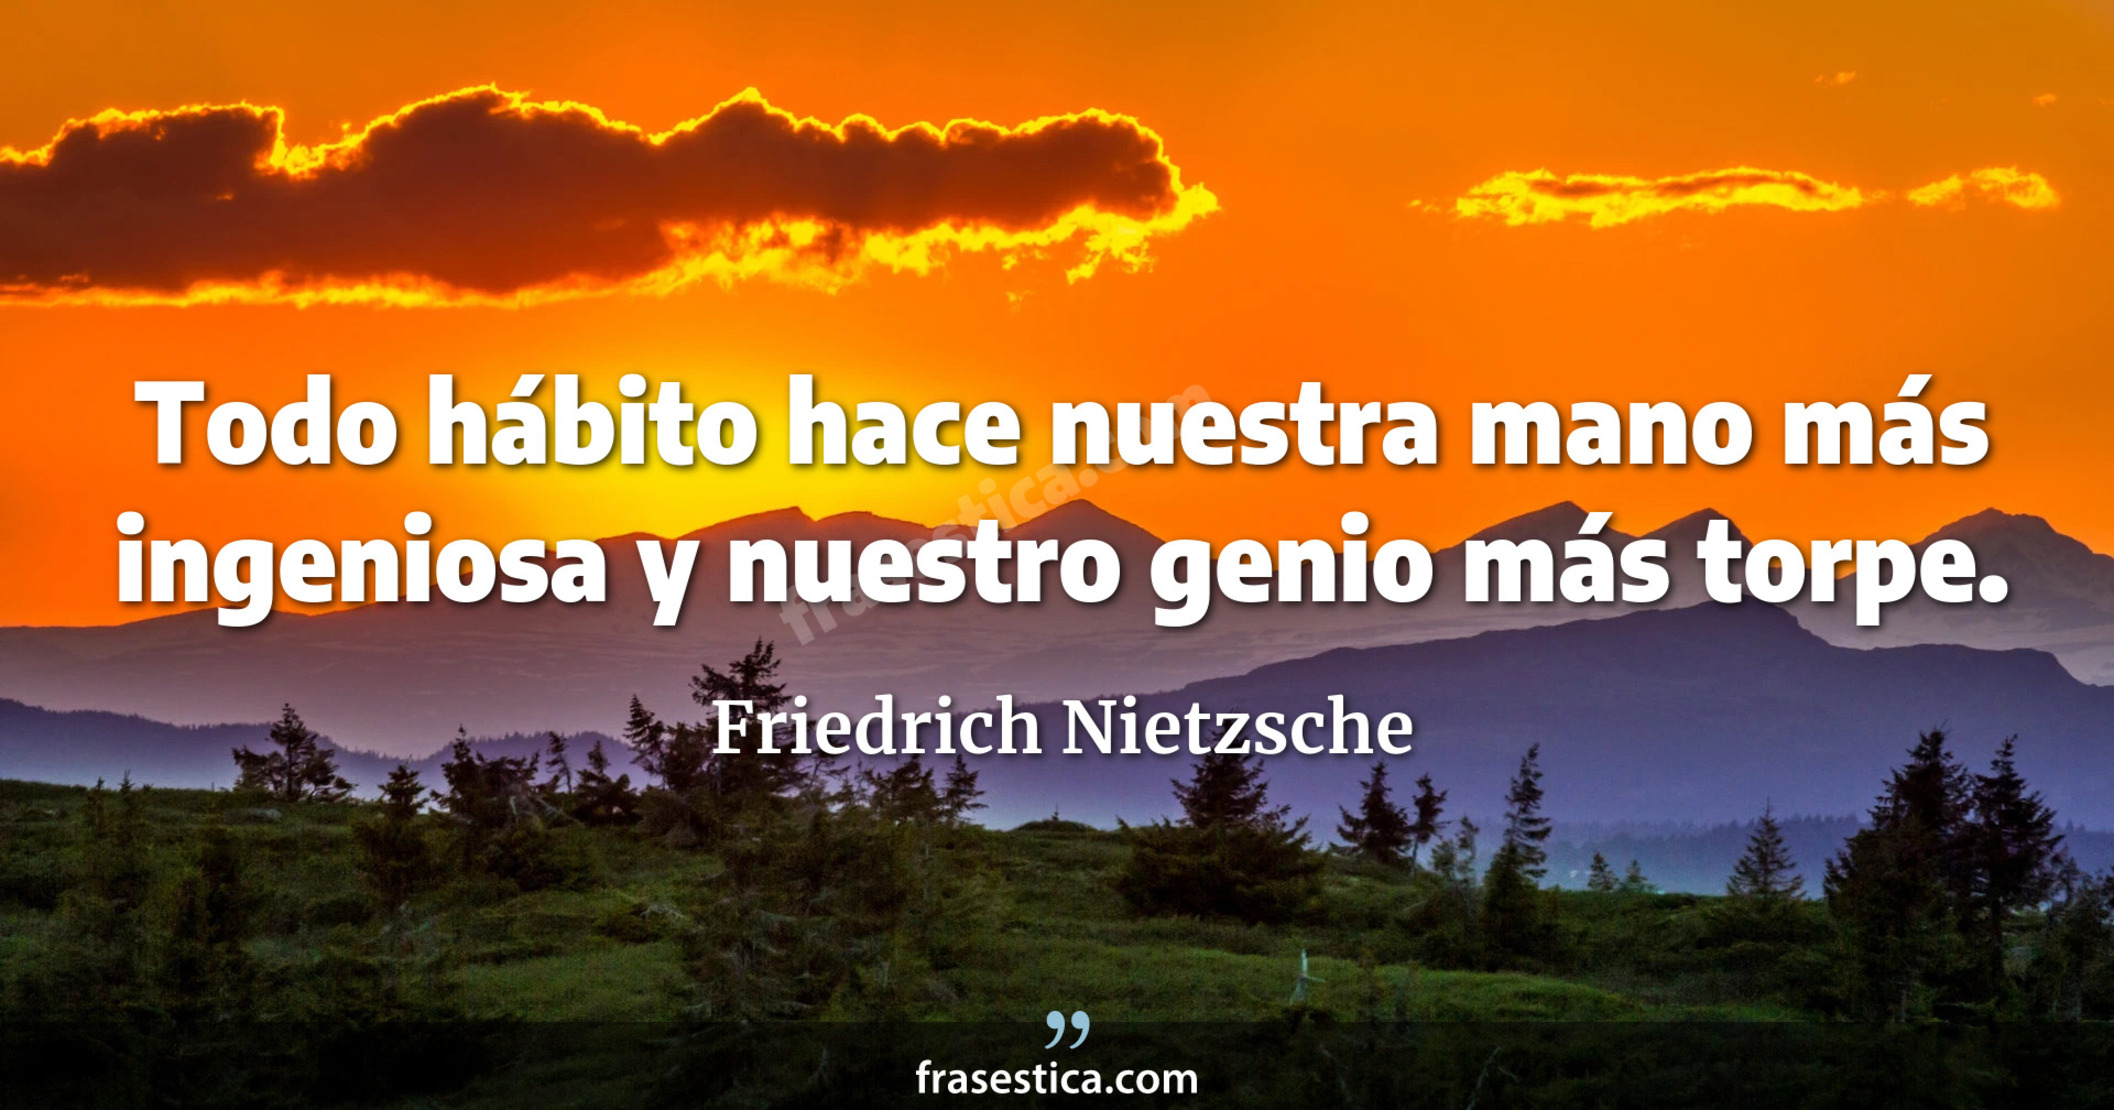 Todo hábito hace nuestra mano más ingeniosa y nuestro genio más torpe. - Friedrich Nietzsche